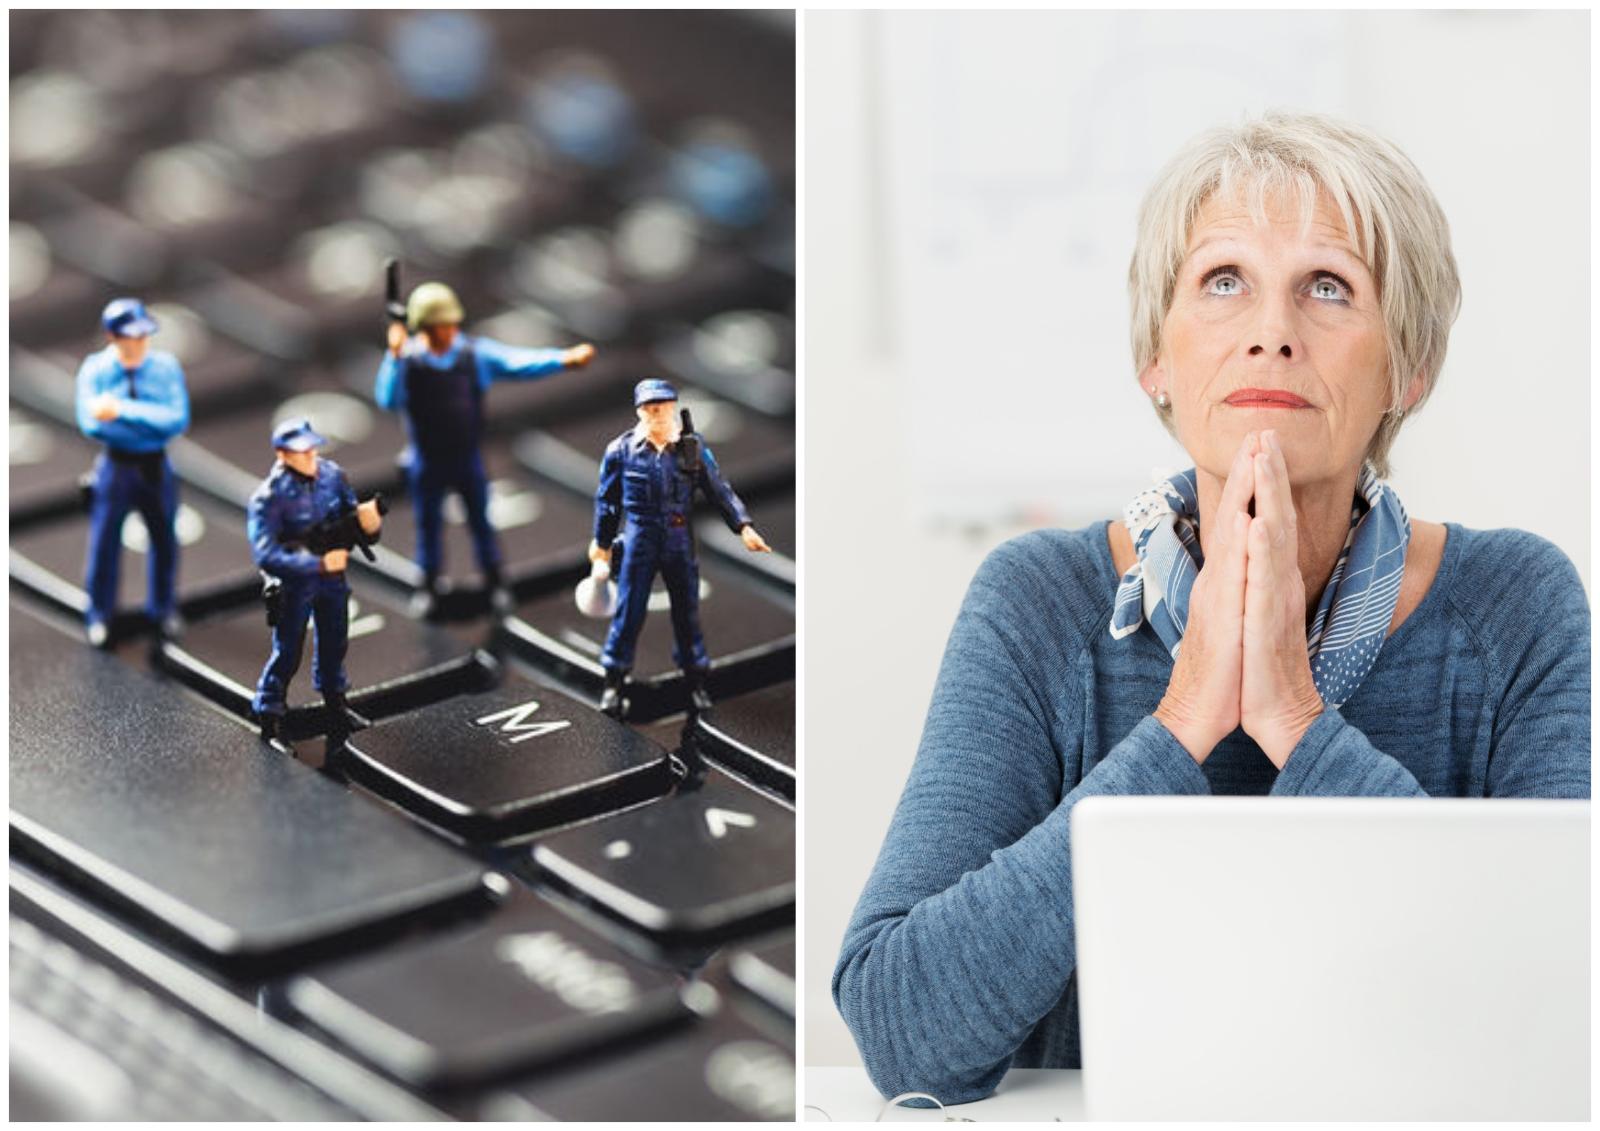 Памятка для бабушки: как точно распознать киберпреступника